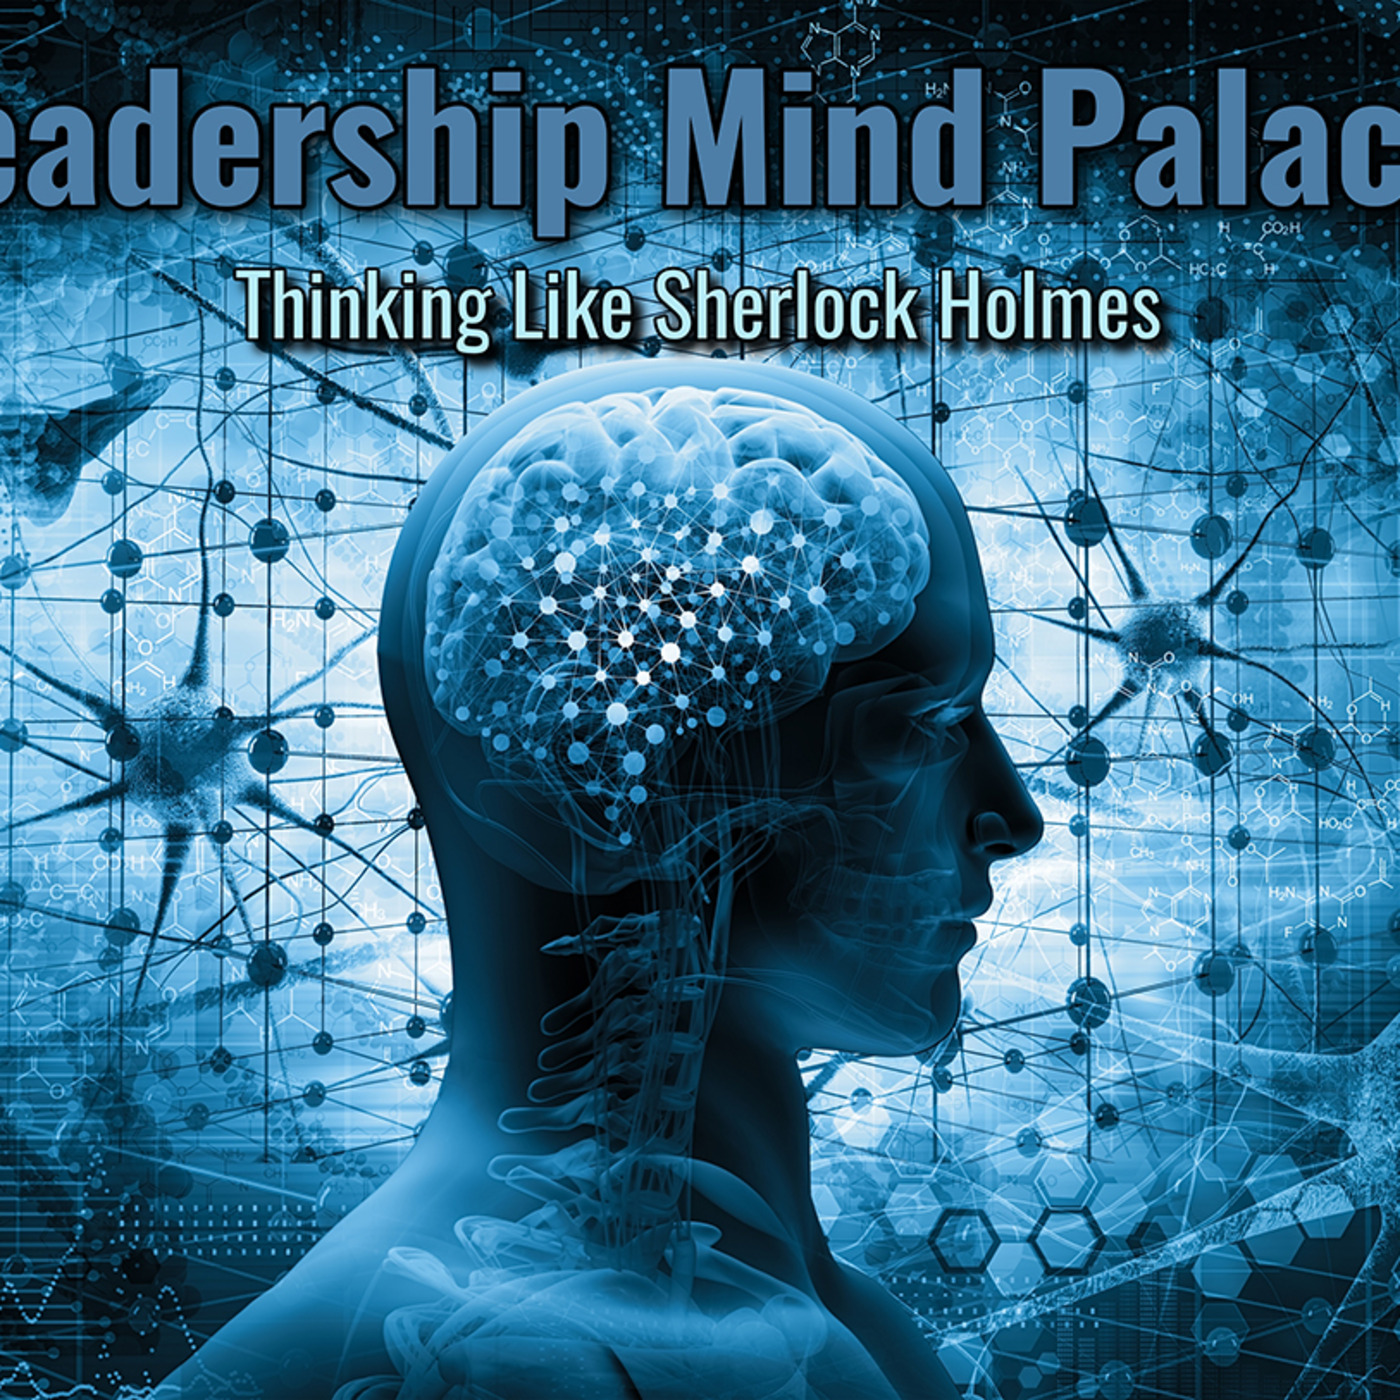 Leadership Mind Palace: Thinking Like Sherlock Holmes